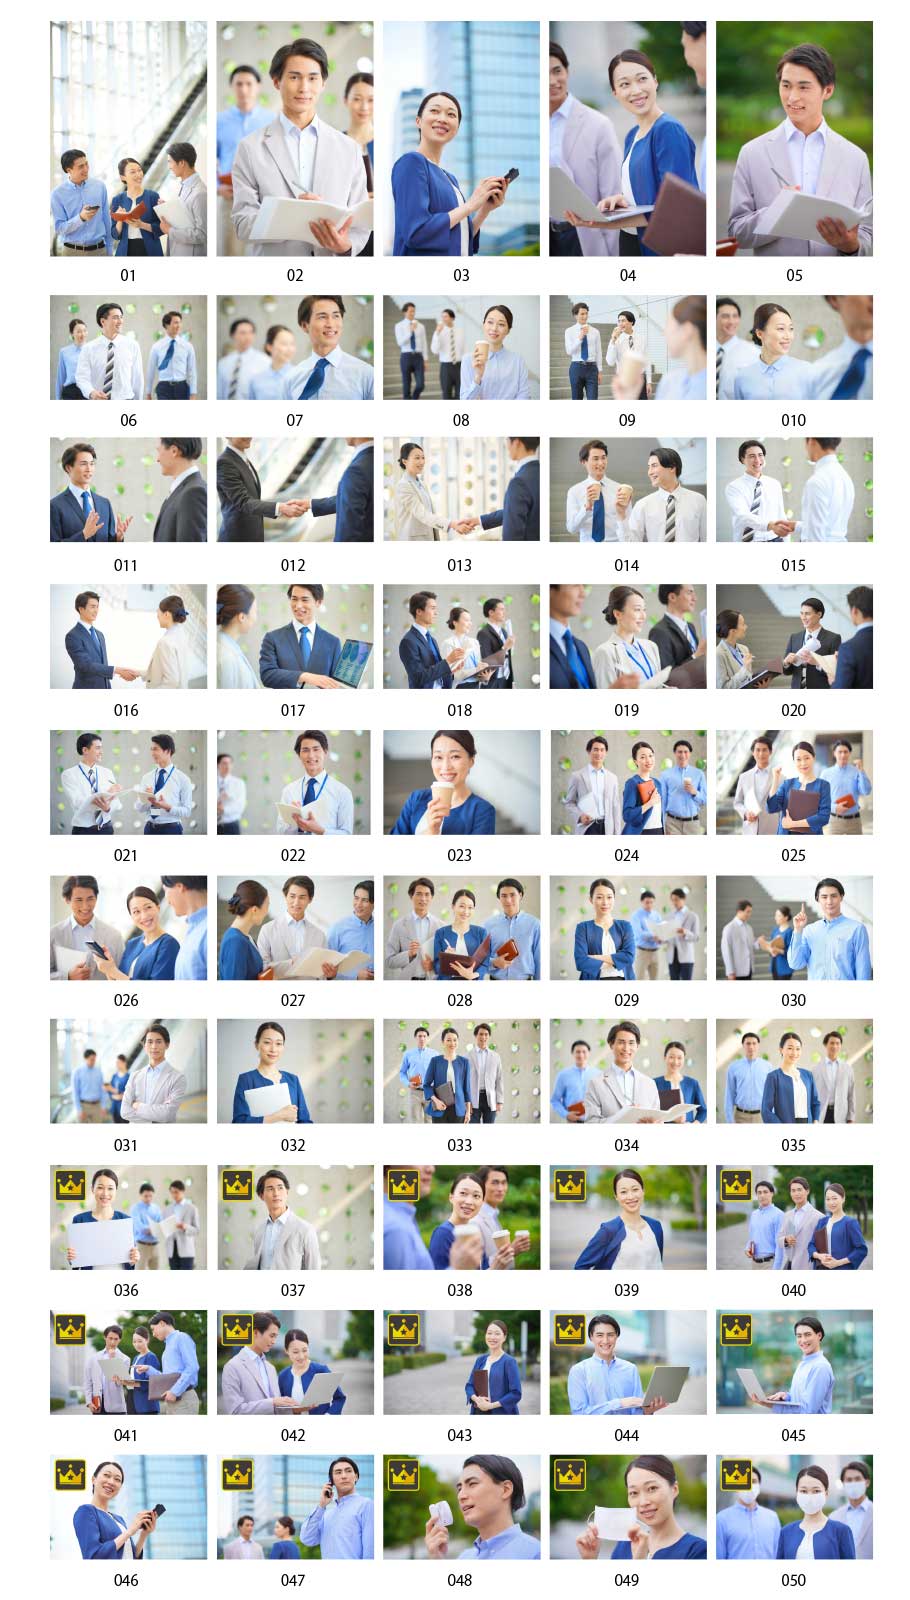 รูปถ่ายของนักธุรกิจหนุ่มชาวญี่ปุ่น